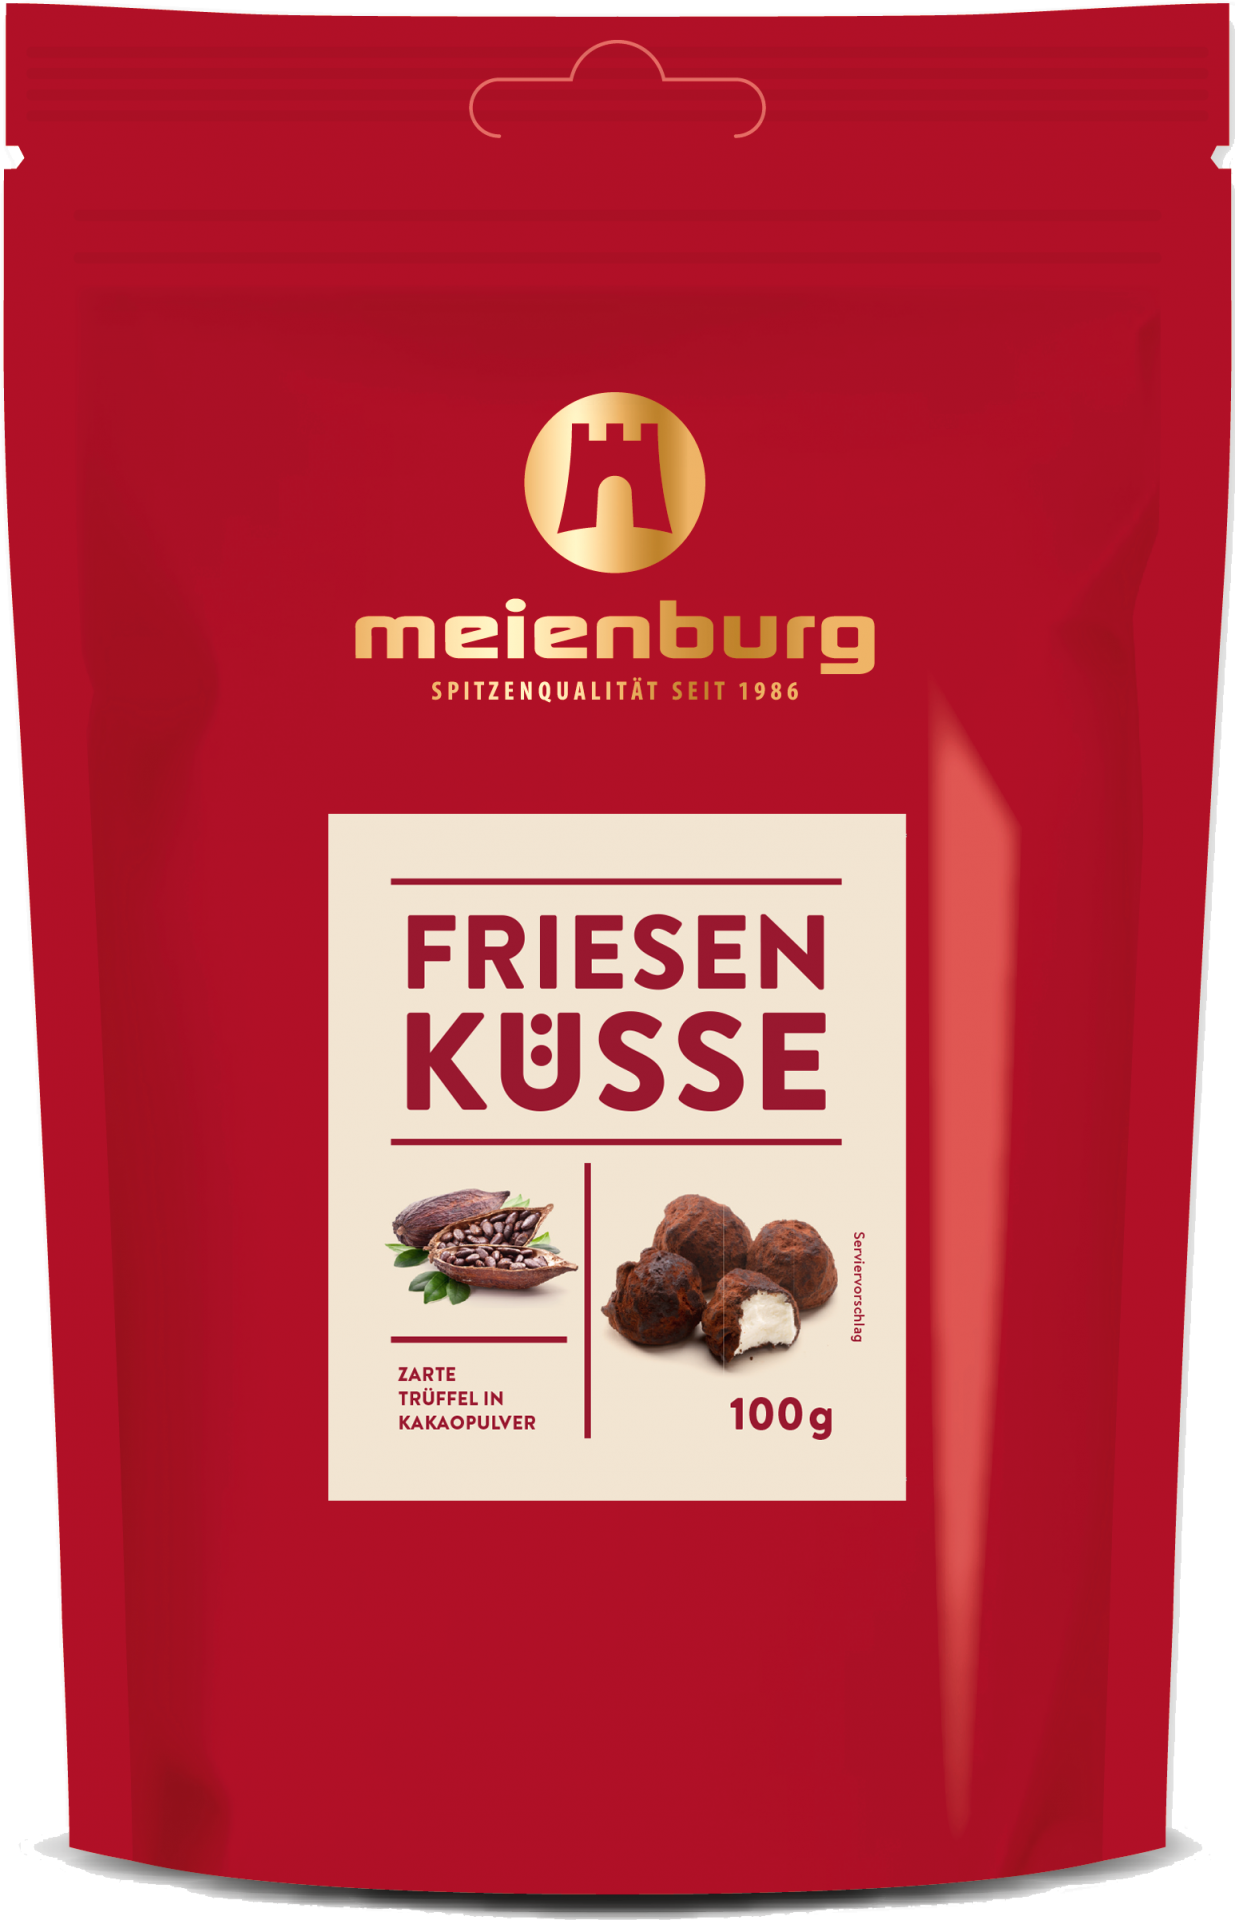 Meienburg Friesen Küsse 100g